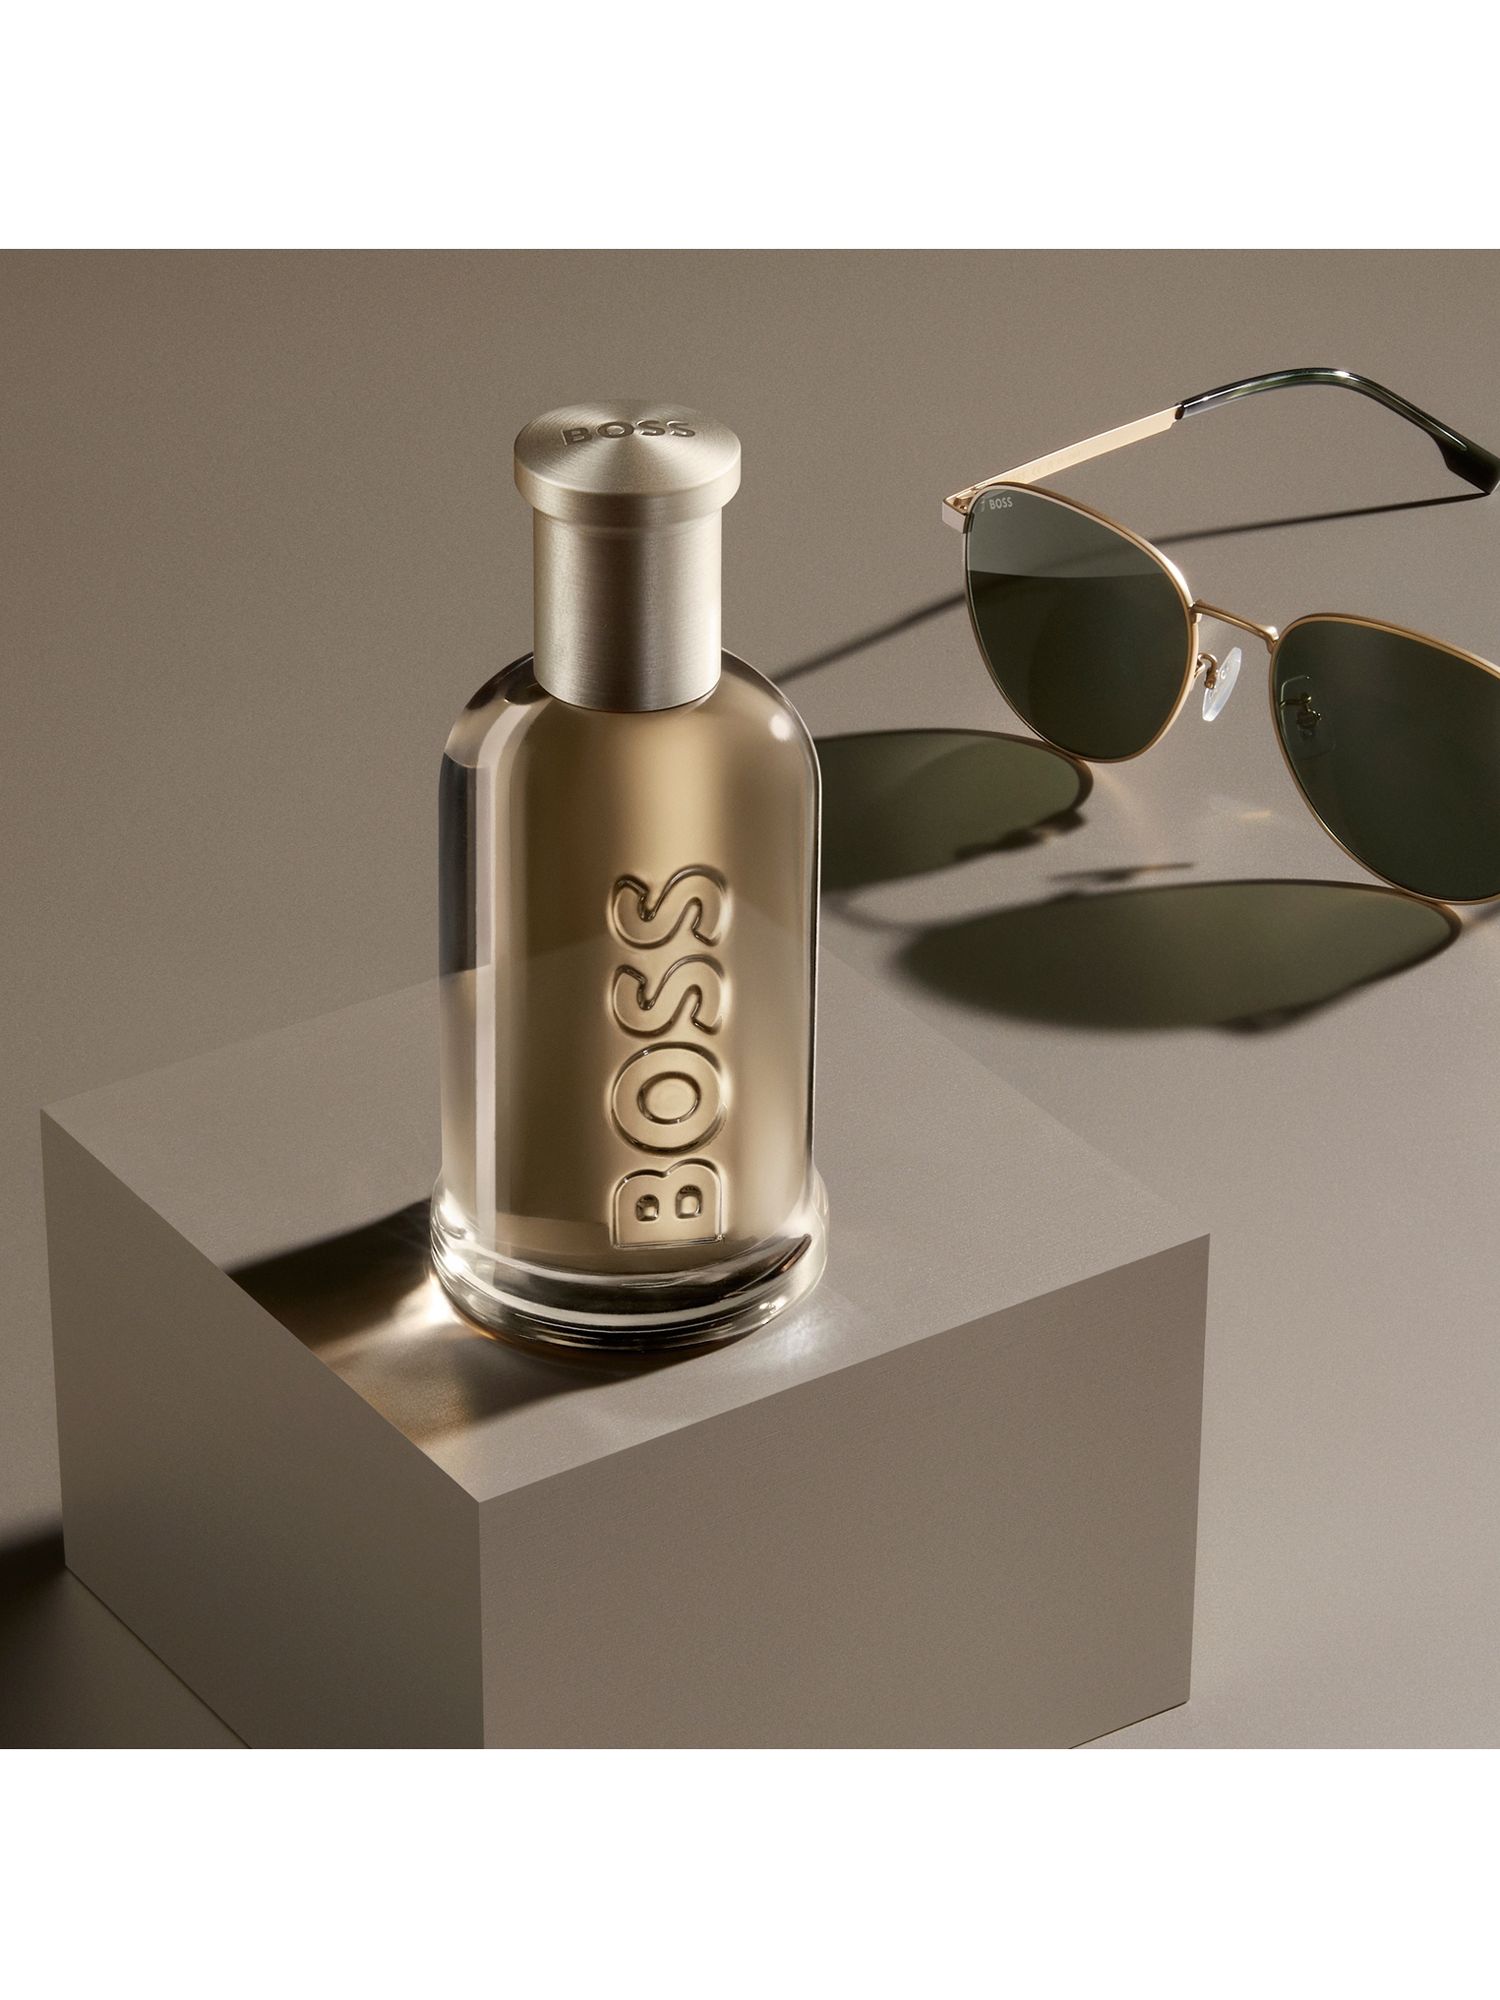 HUGO BOSS BOSS Bottled Eau de Parfum, 50ml at John Lewis & Partners